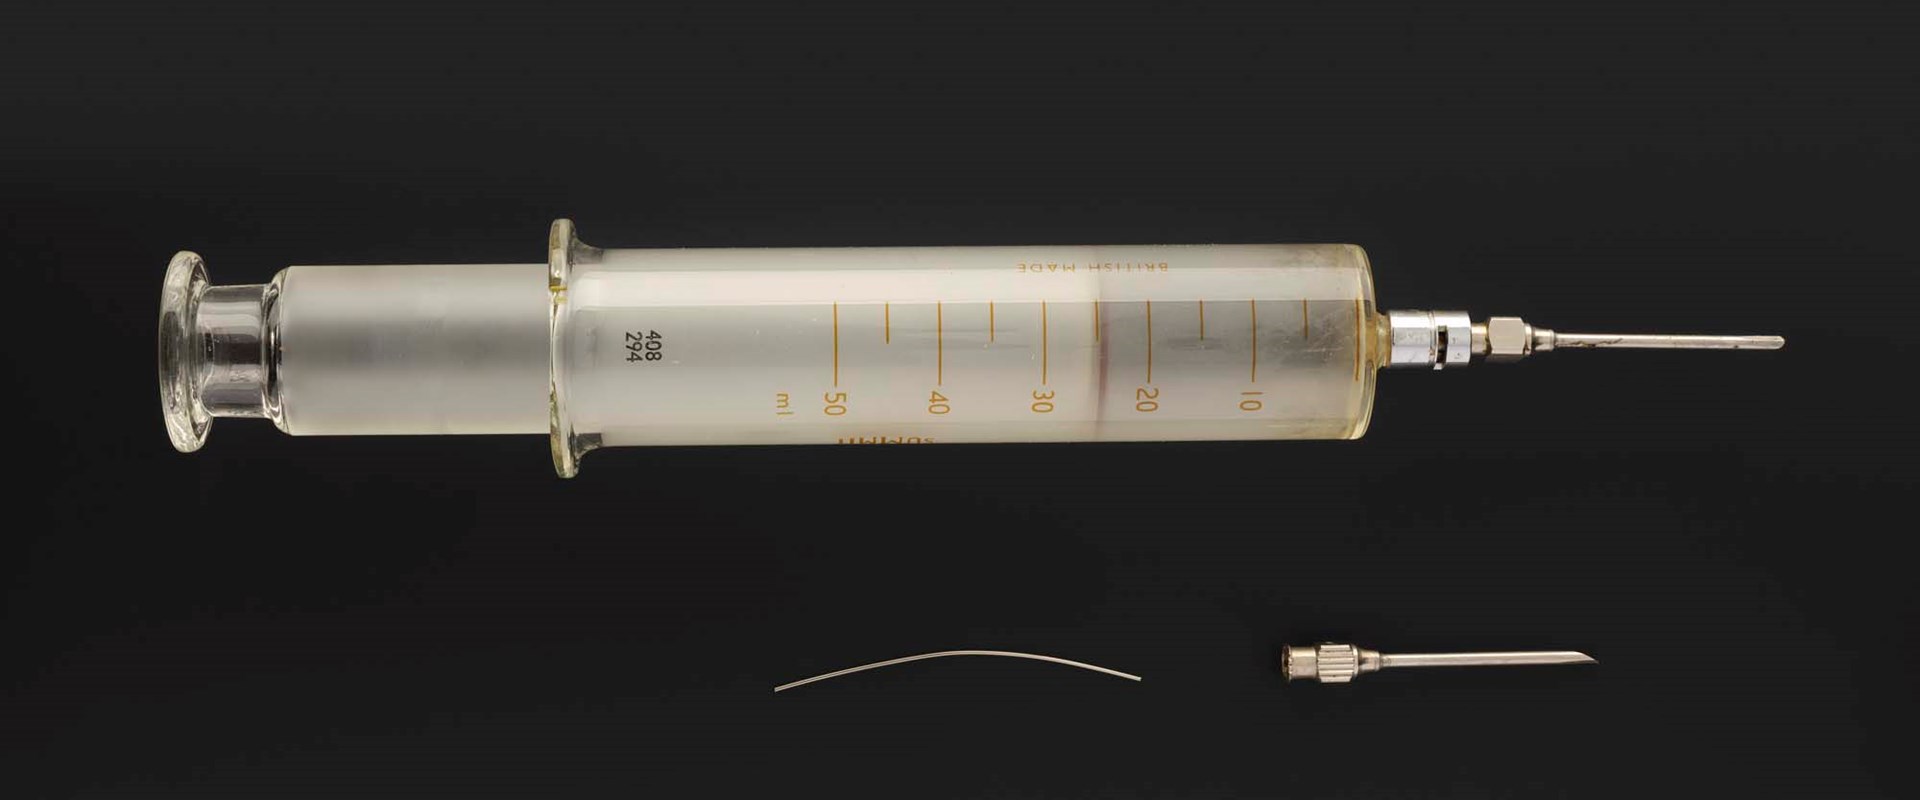 Detail Image Of A Syringe Nomer 20